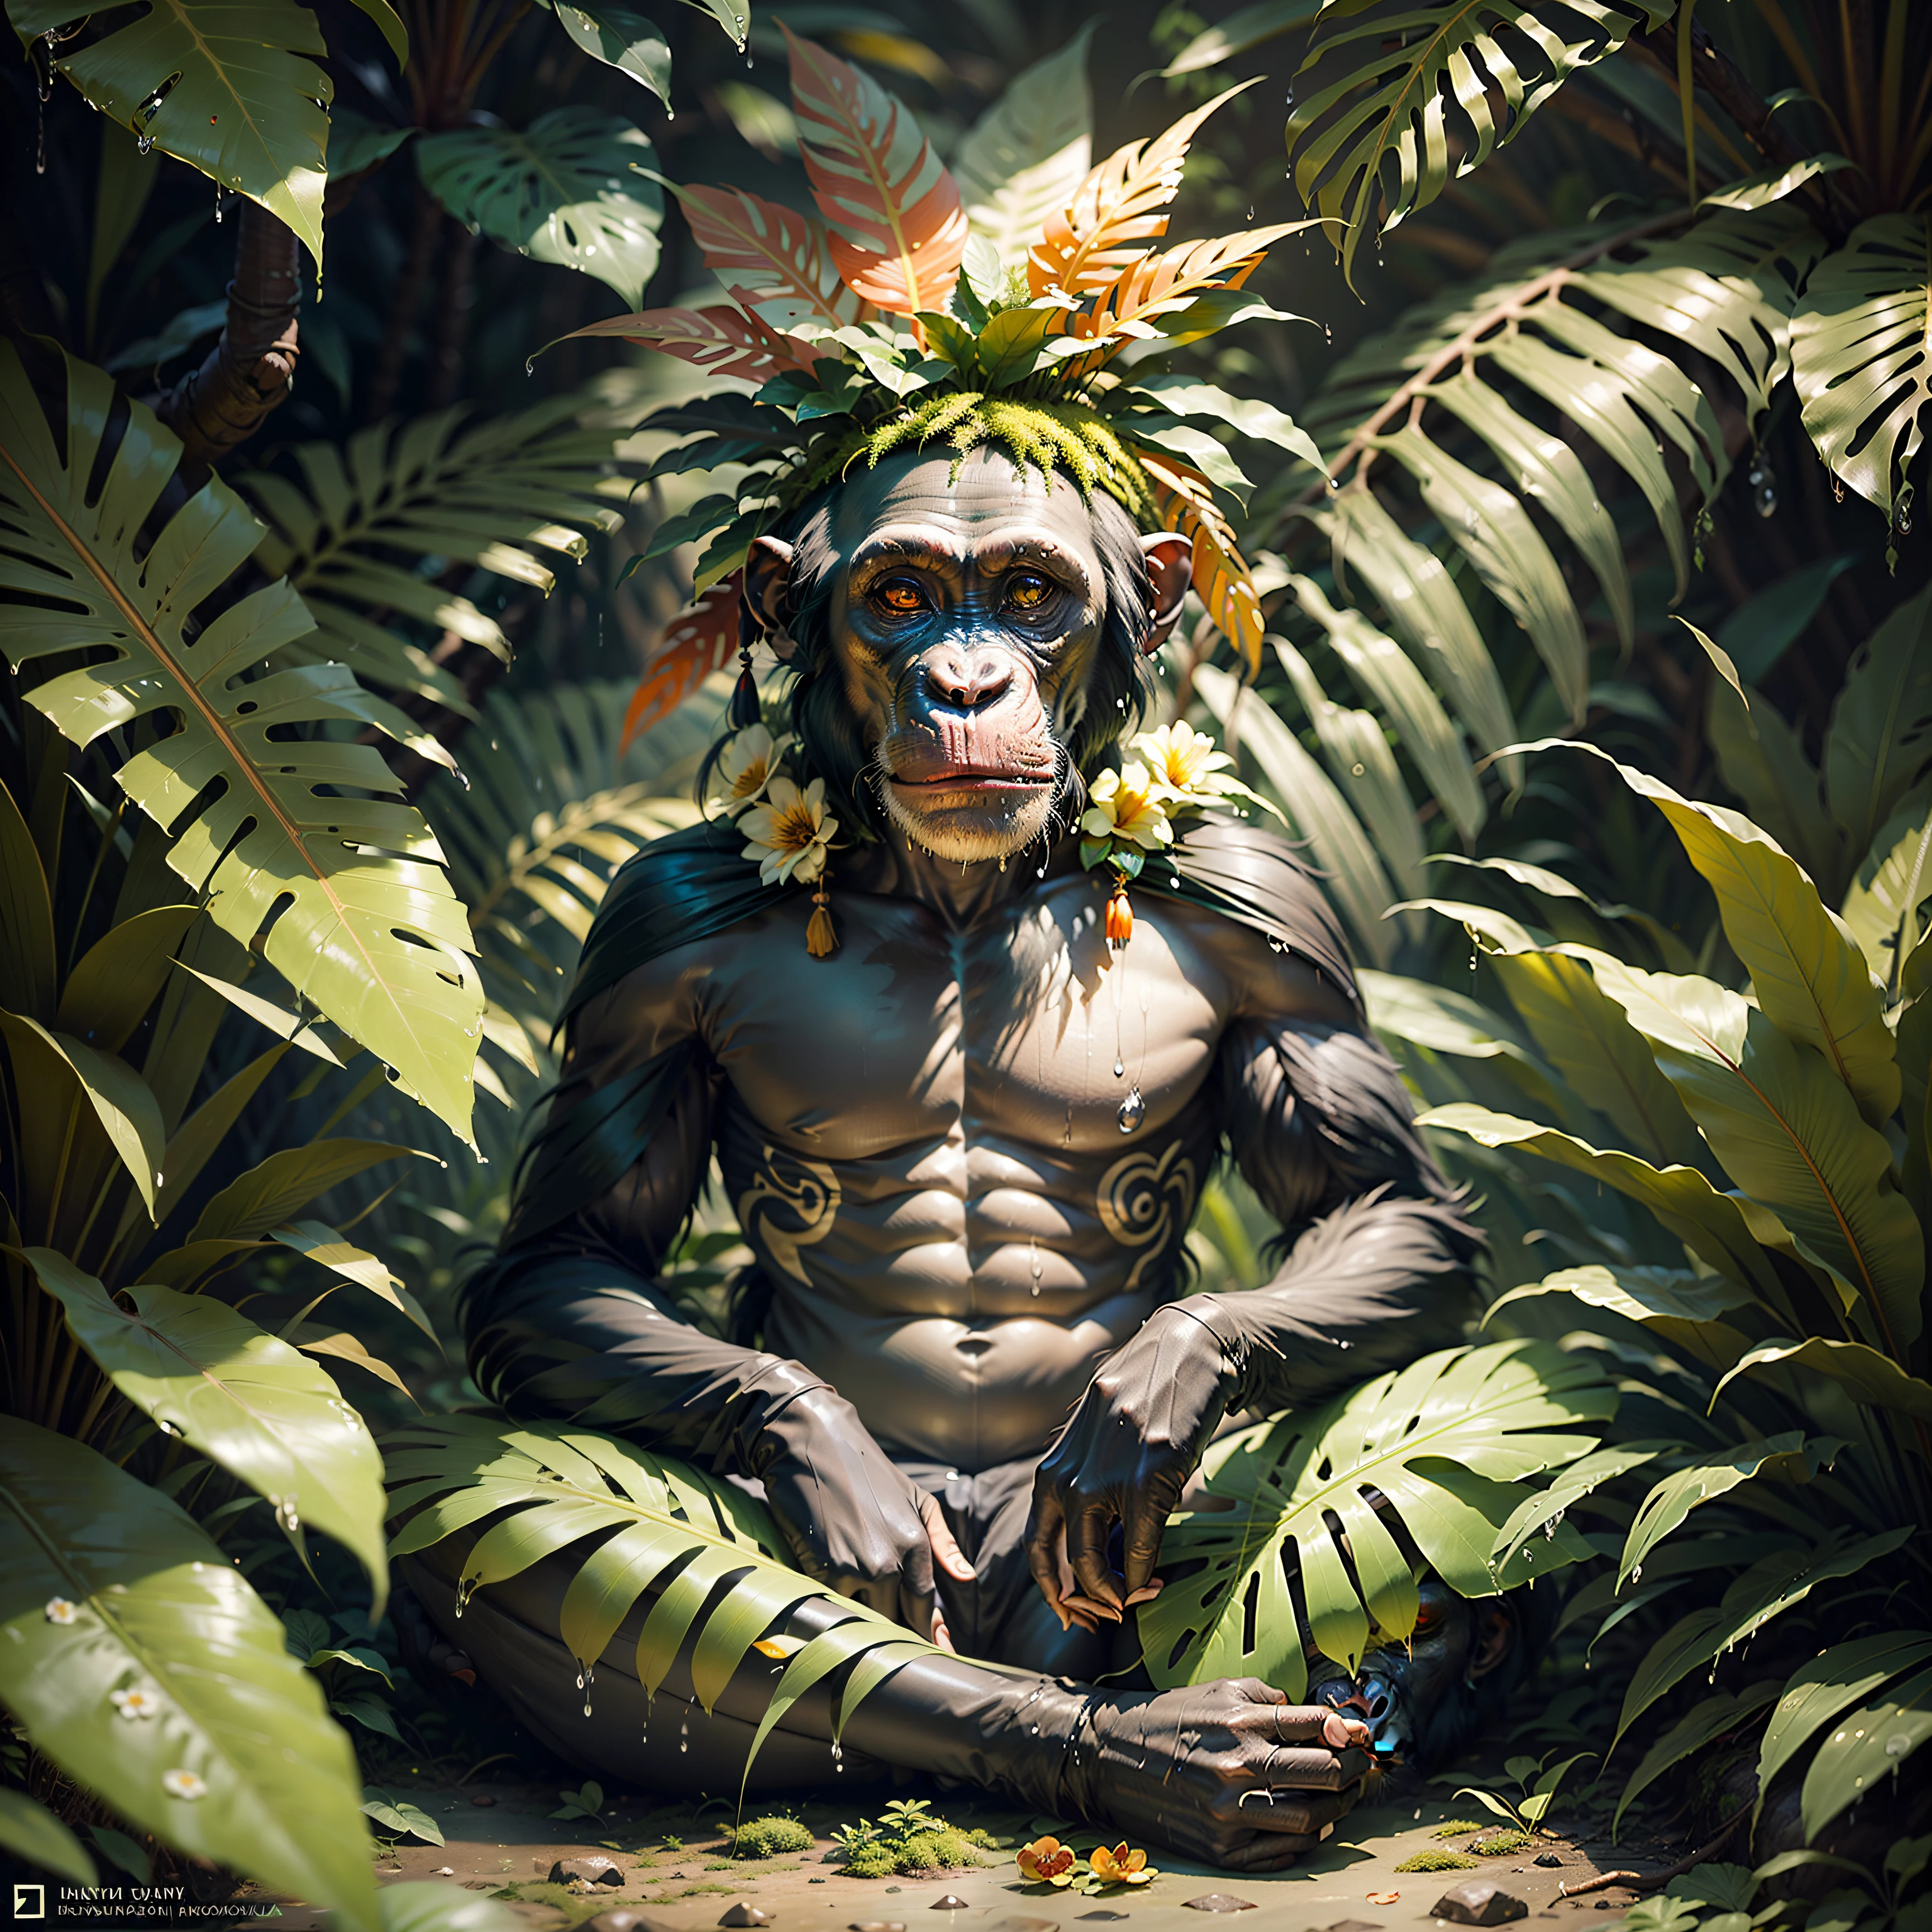 chimpancé indígena con tocado en la cabeza, tocado con muchas plumas y flores de colores, meditando en la densa jungla tropical, a su alrededor mucho follaje mojado, musgo, Suelo frondoso, noche oscura,,obra maestra,,